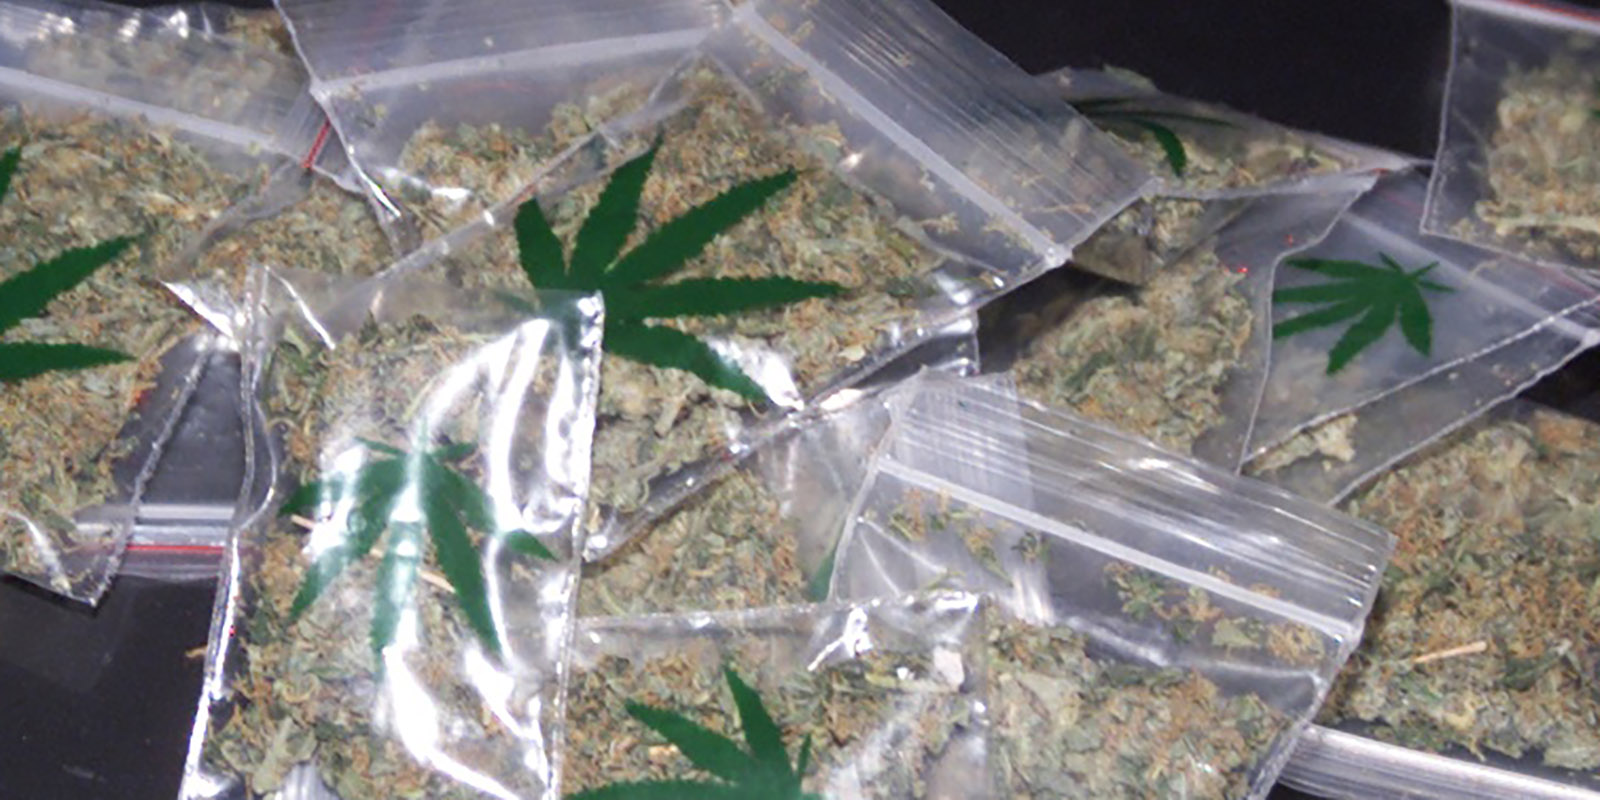 Verkaufsfertig abgepacktes Marihuana. Foto: zv